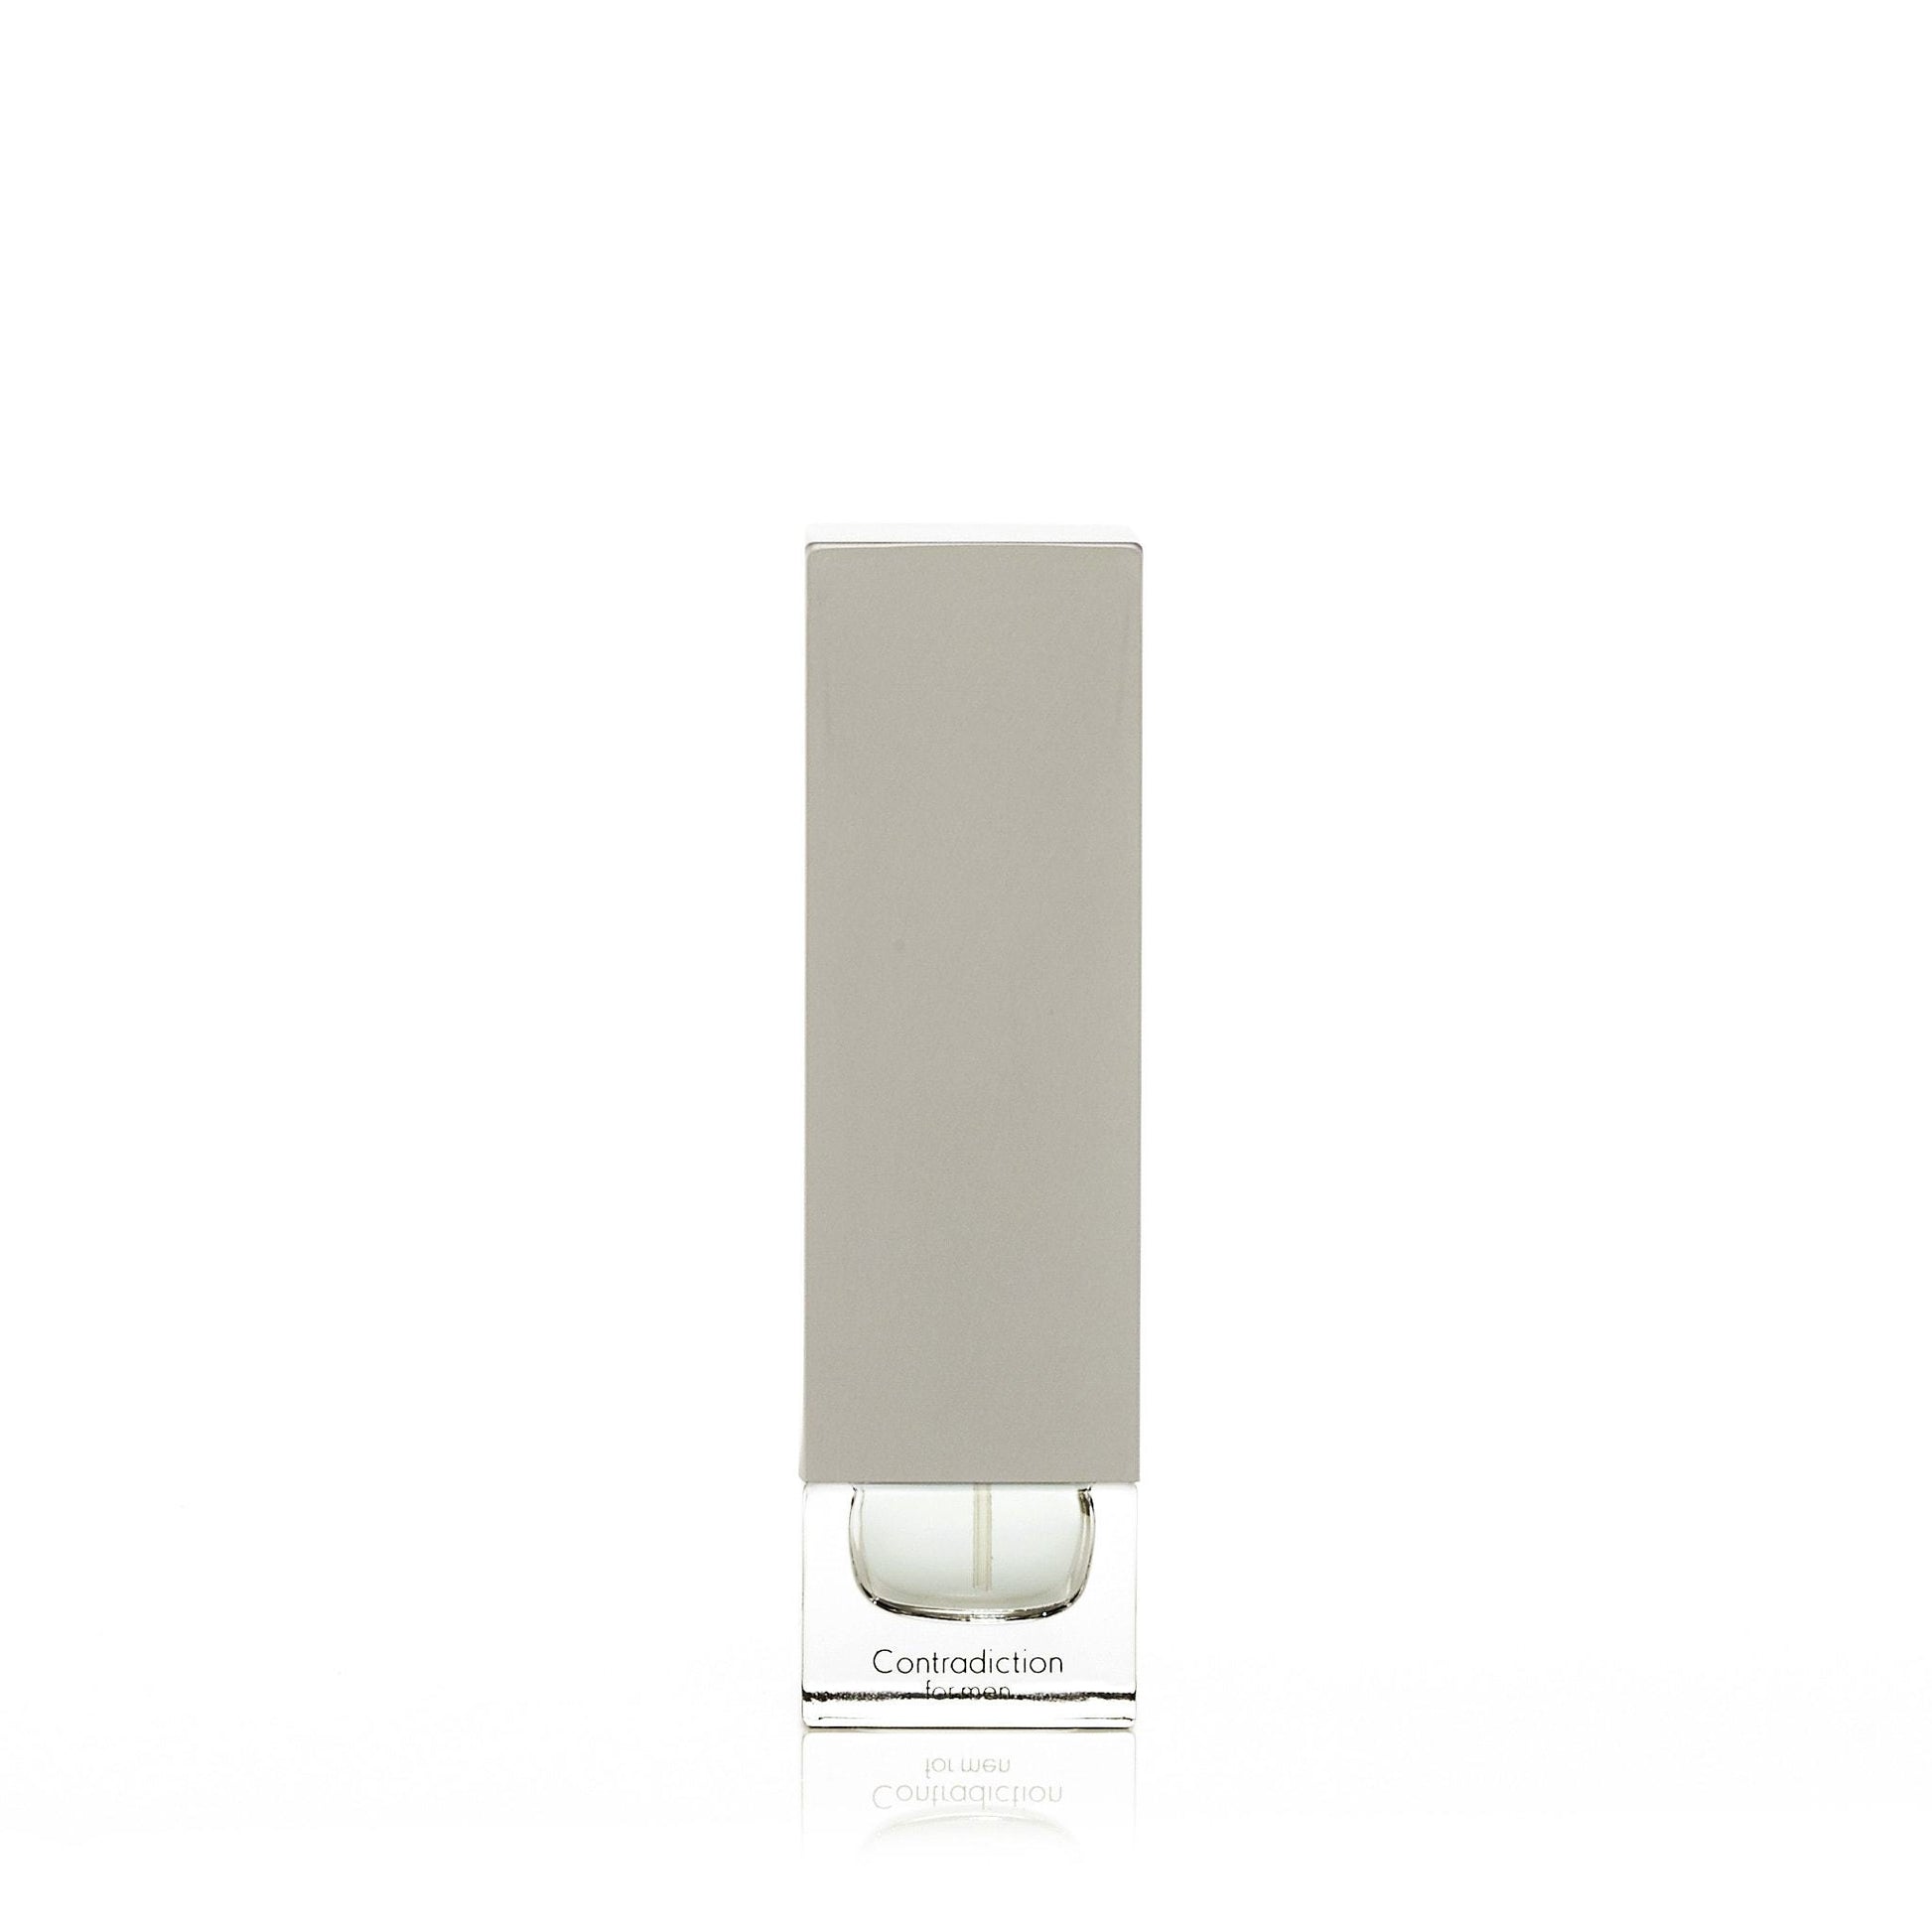 Contradiction Eau de Toilette Spray for Men by Calvin Klein, Product image 2